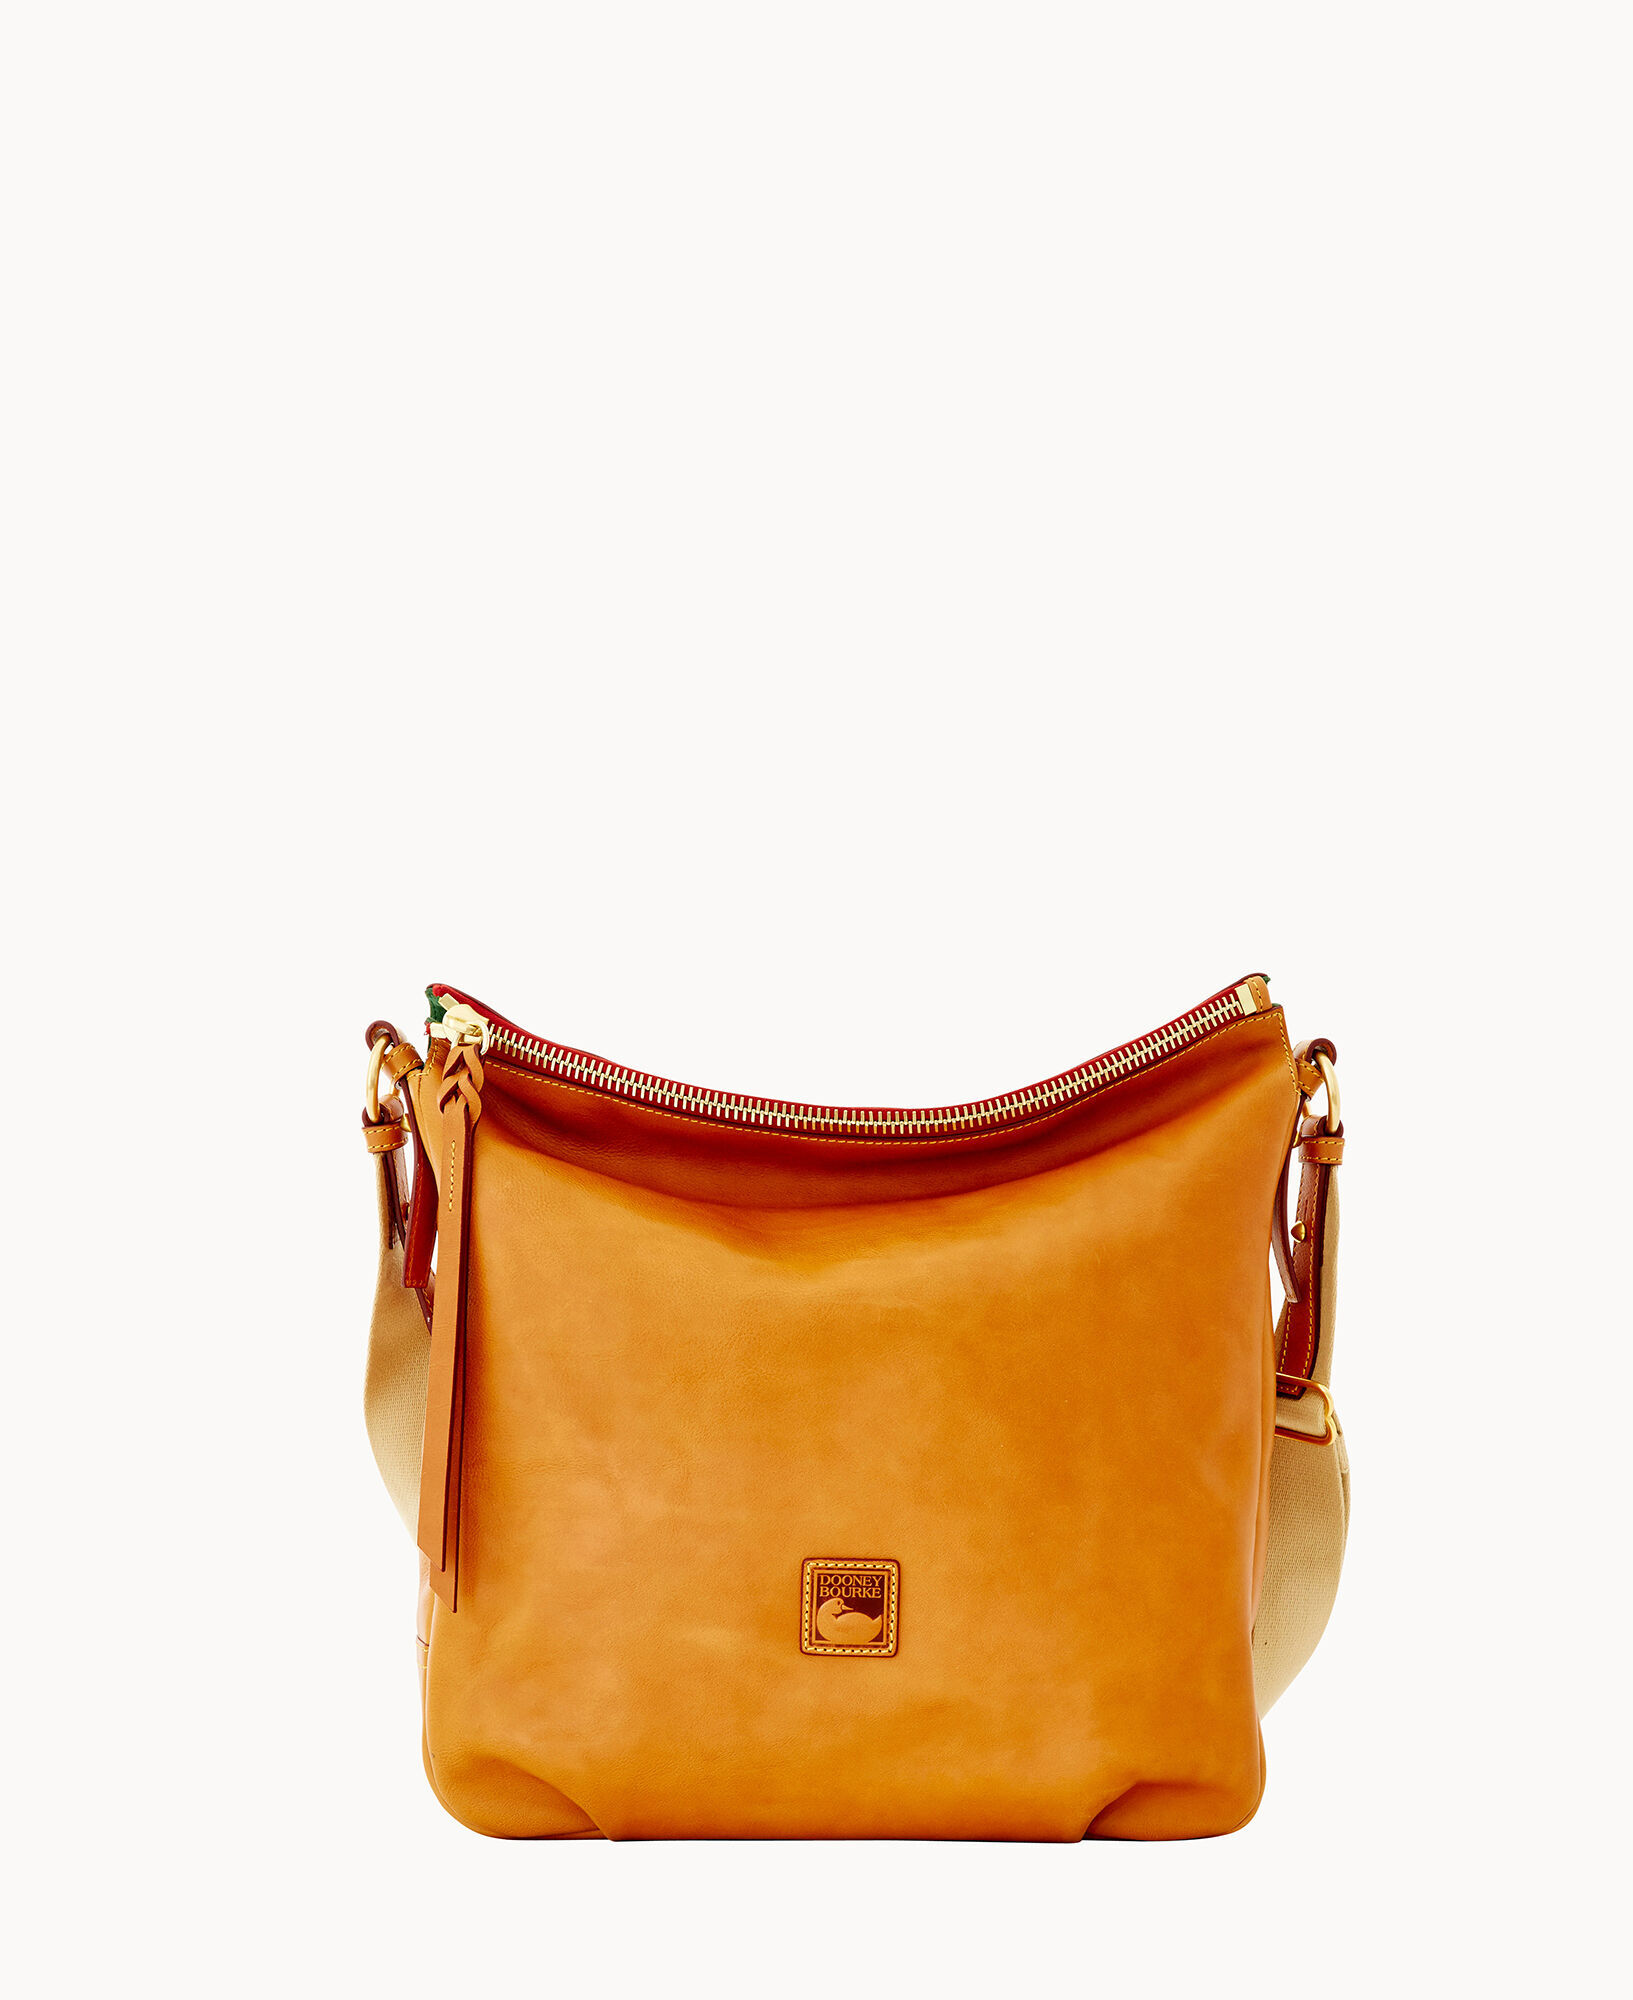 Small Tri-color Saffiano Leather Smartphone Crossbody Bag In Yellow